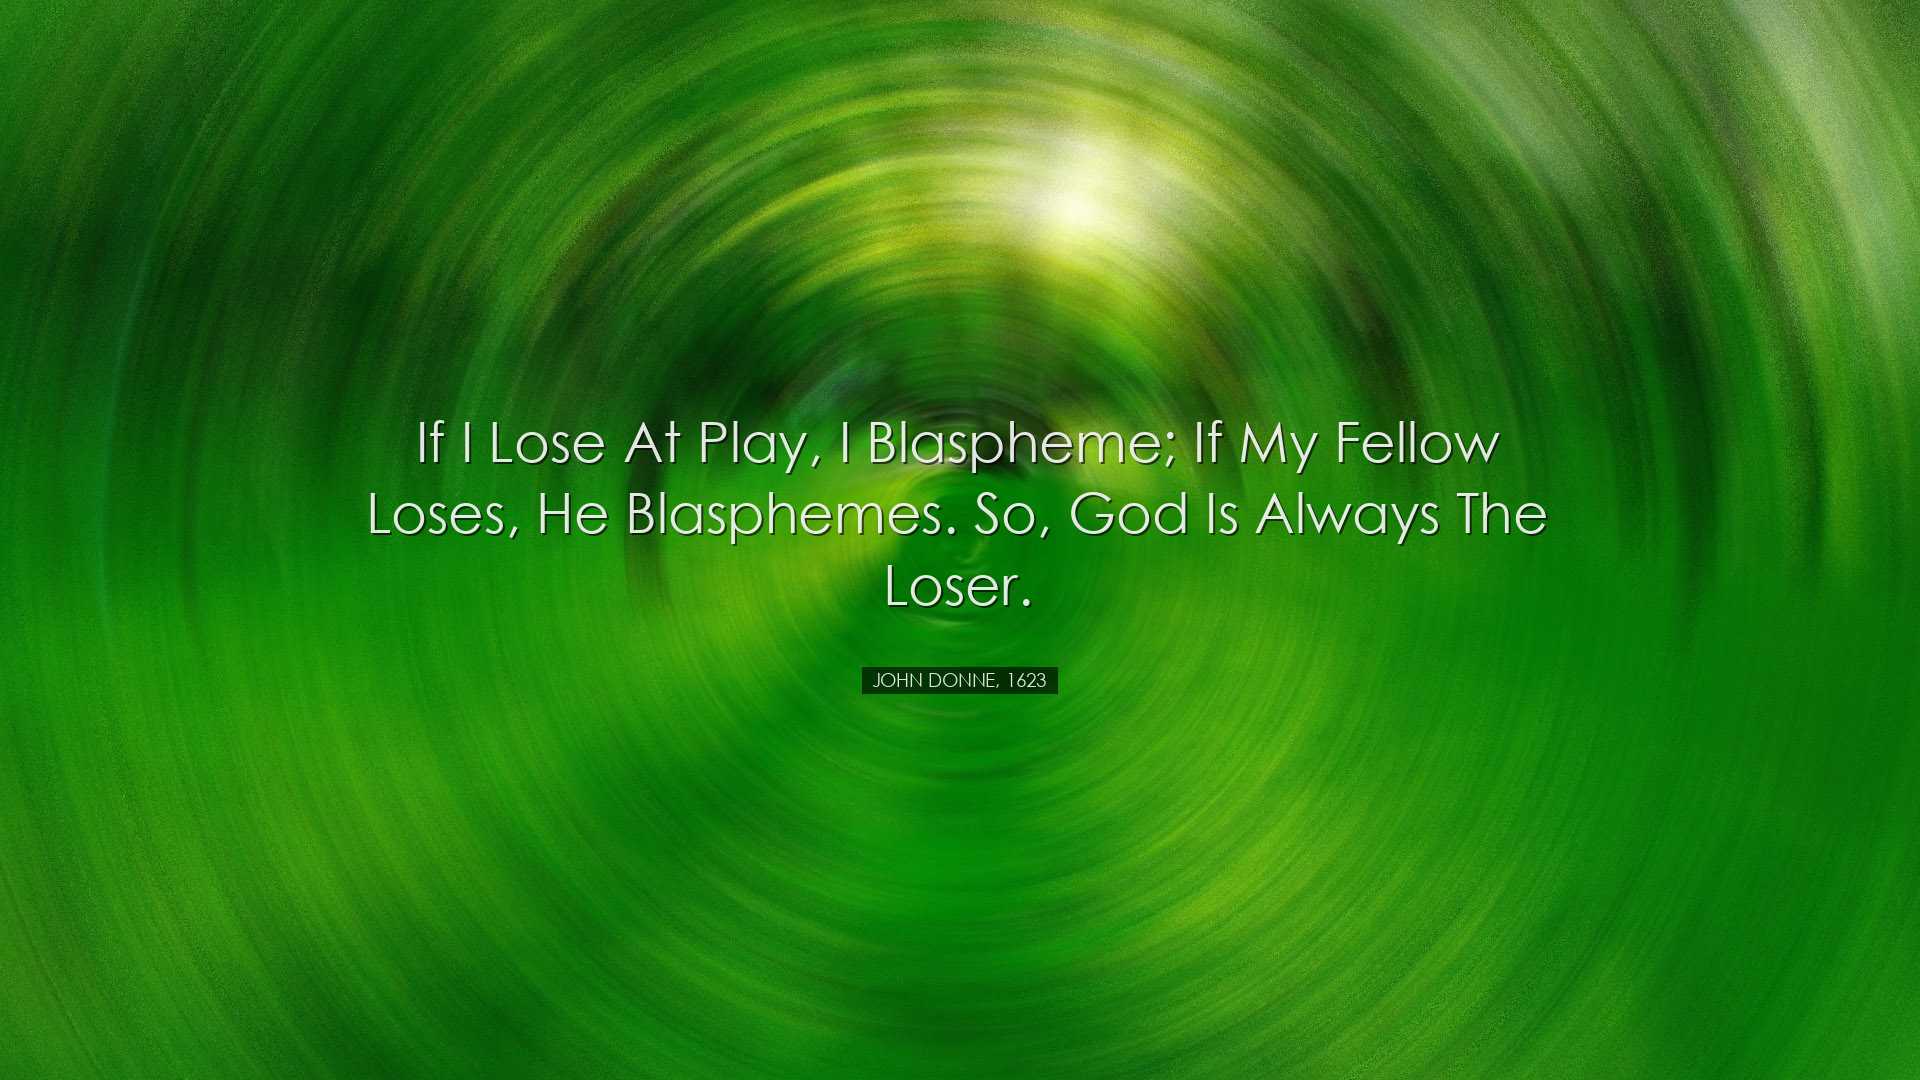 If I lose at play, I blaspheme; if my fellow loses, he blasphemes.